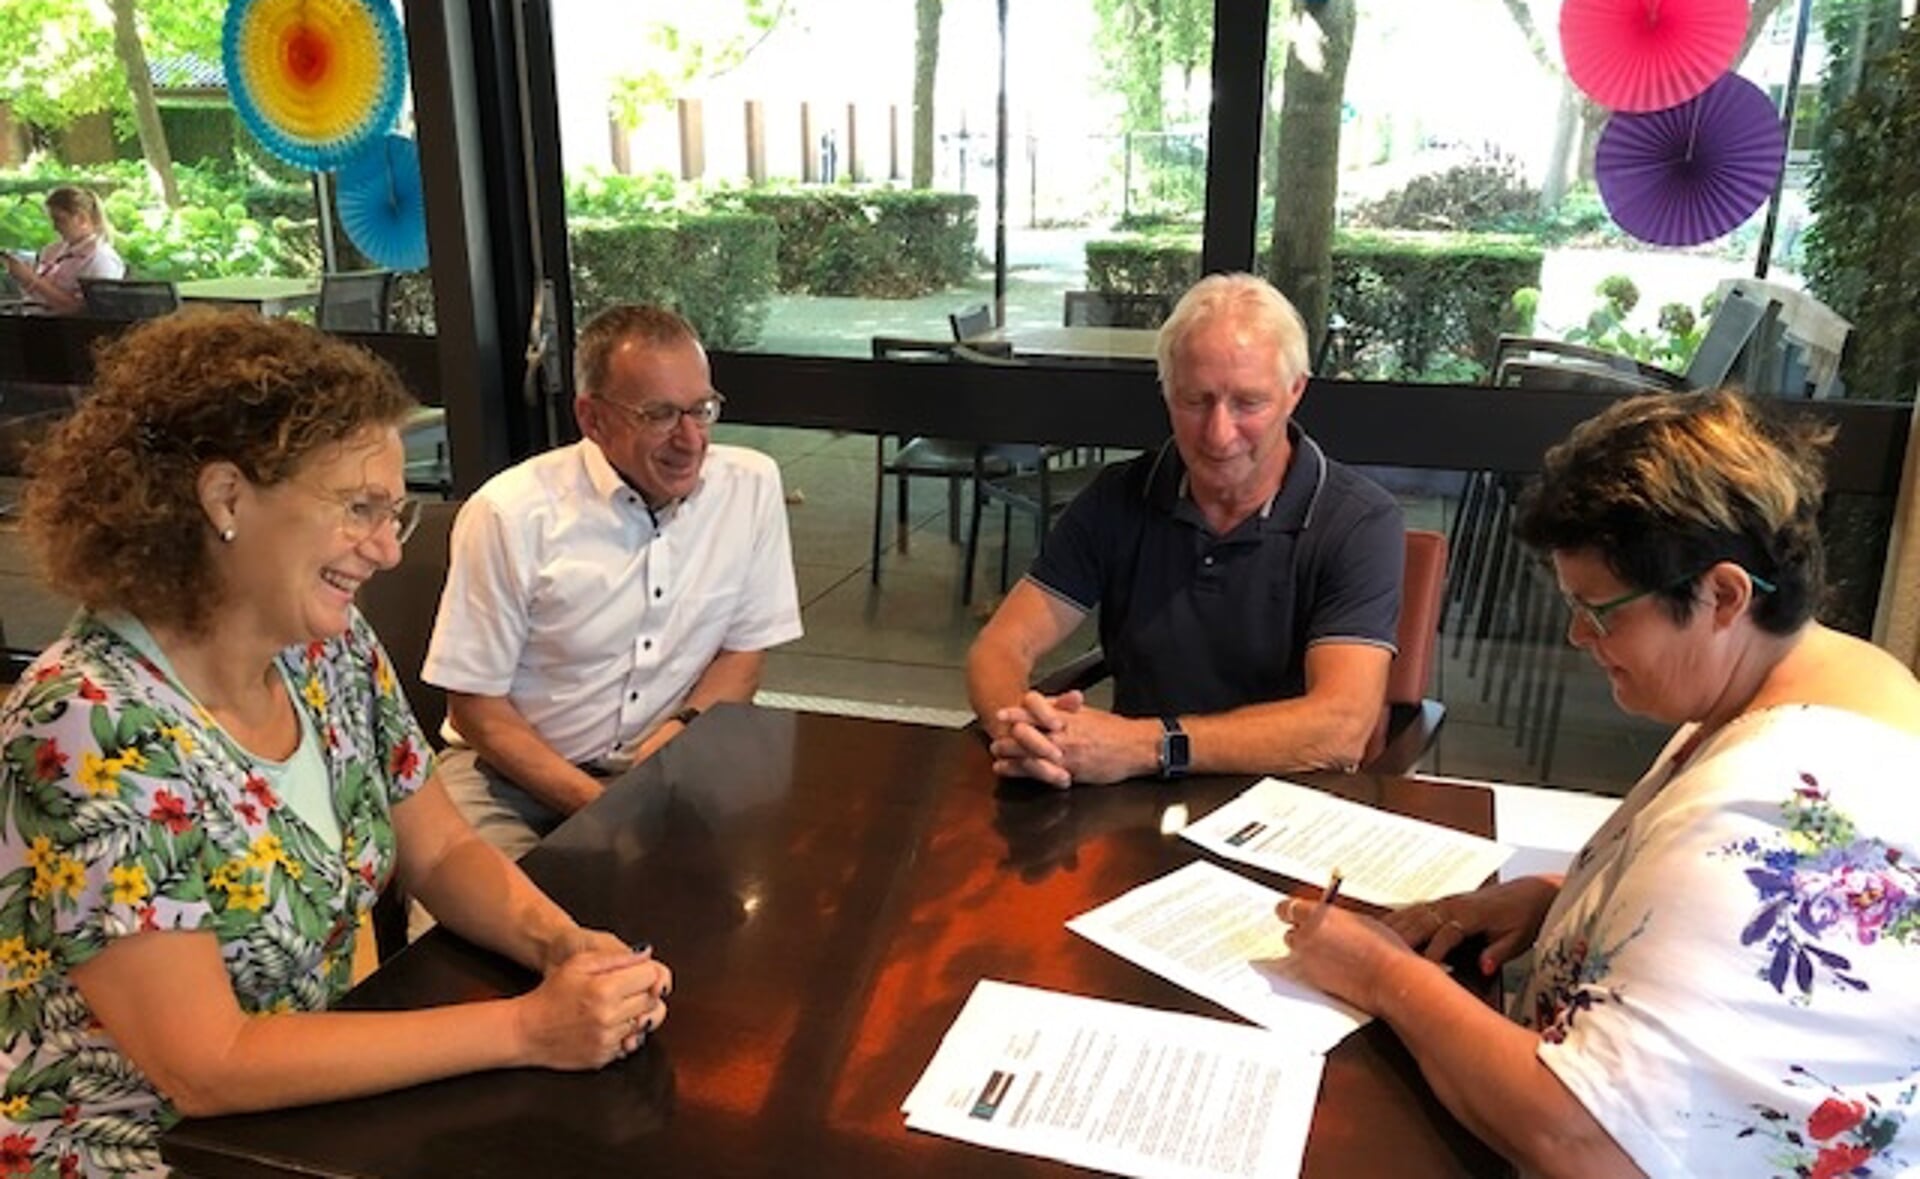 Directeurs Angela Rokven (linsk) en Hans Wijgers (tweede van links) ondertekenden samen met directeur Janny van de Sande van stichting Broodnodig de afspraken over het runnen van het restaurant in wijkhuis Simeonshof.